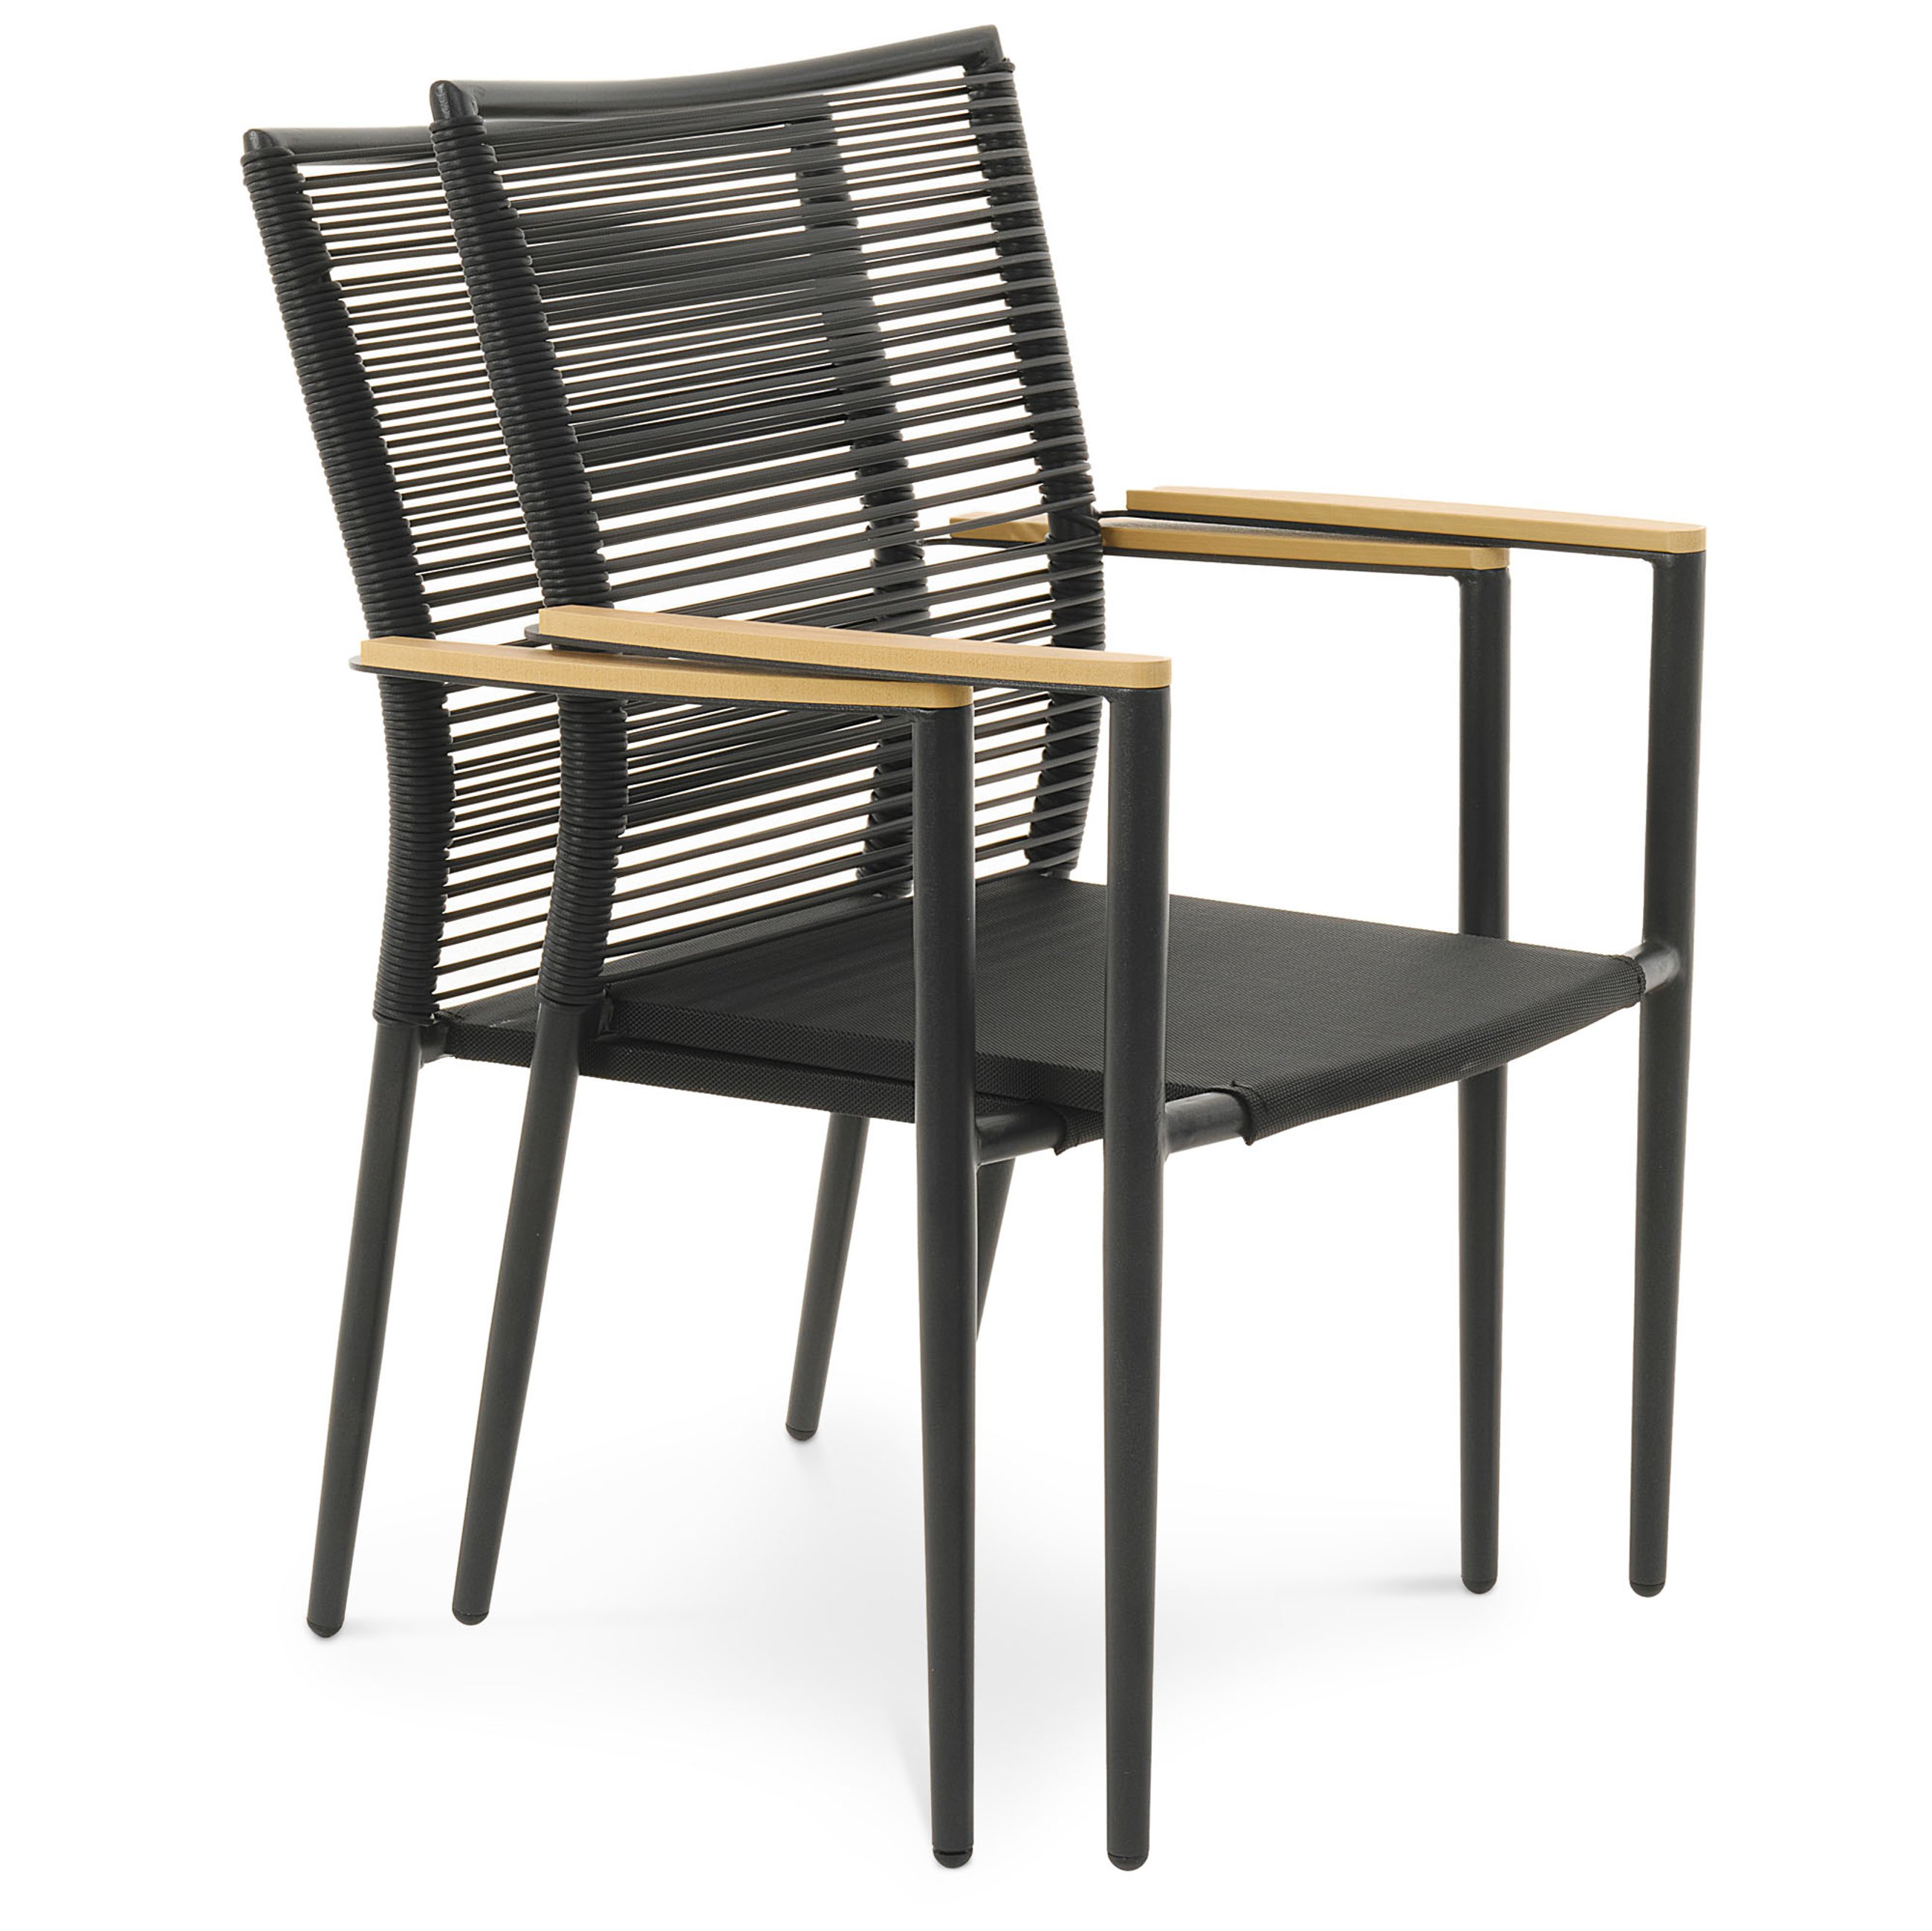 Możliwość sztaplowania krzeseł Asti z beżowymi podłokietnikami w ilości 2 sztuki